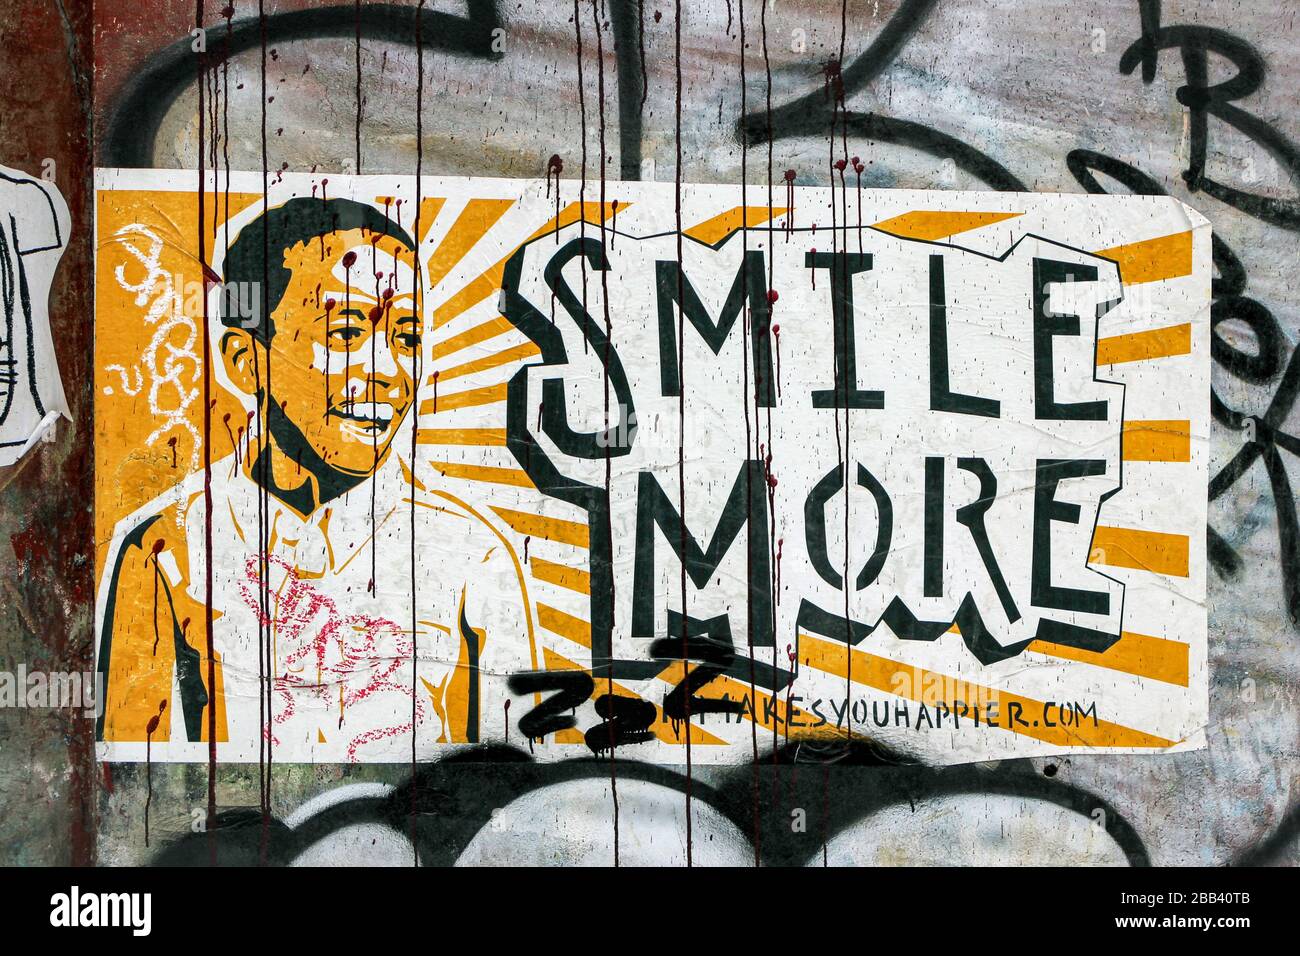 Souriez plus, autocollant sur un mur à Manhattan, New York City, États-Unis d'Amérique Banque D'Images